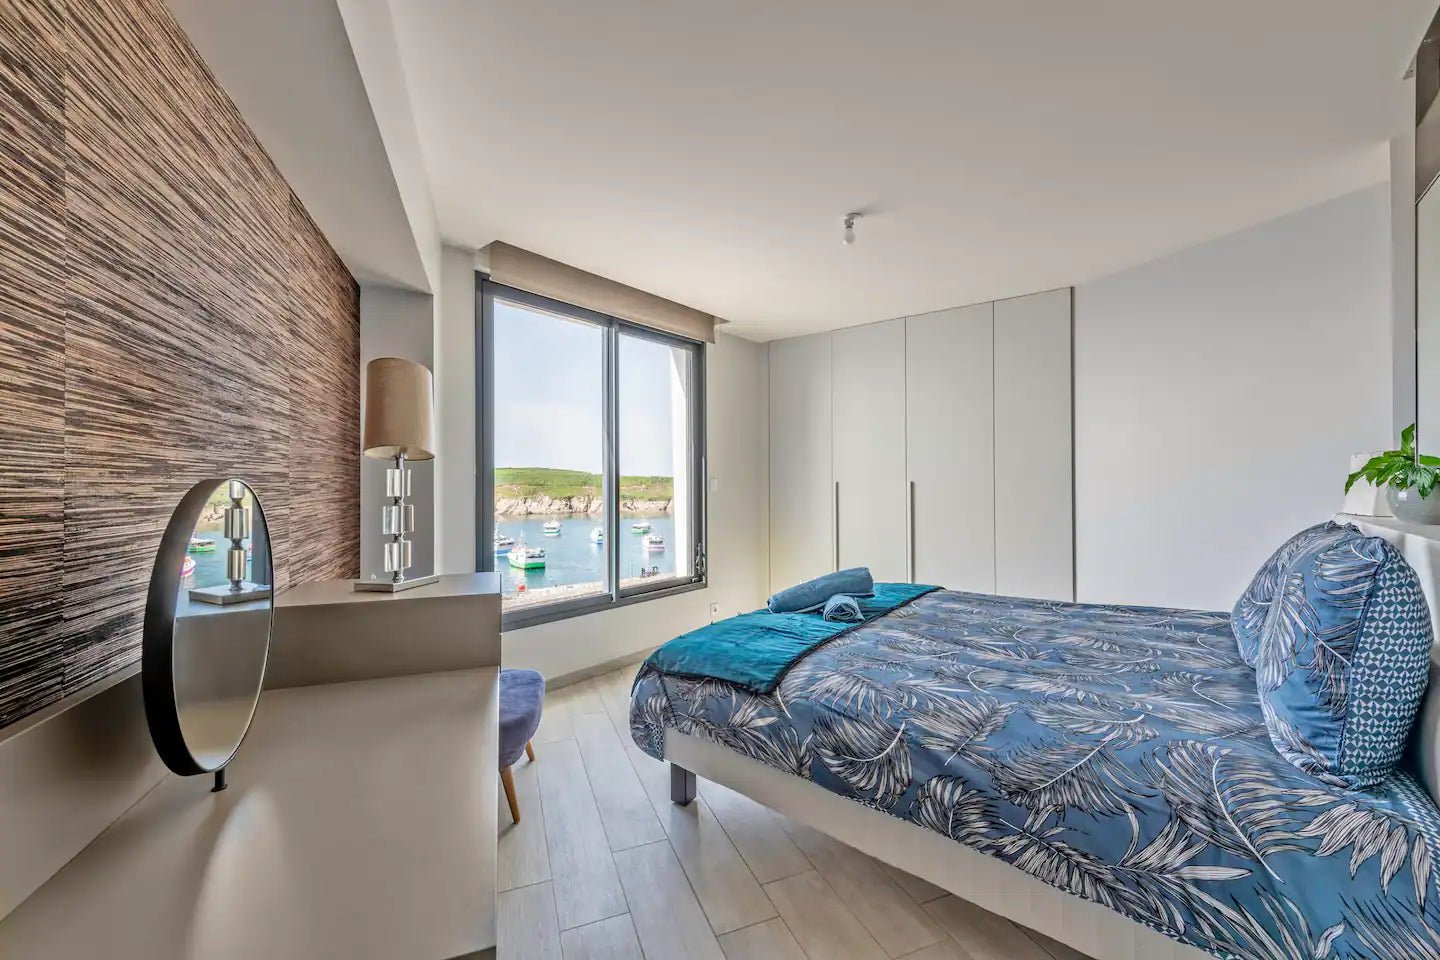 Magnifique loft au Conquet avec vue mer - Location airbnb Bretagne - Résidence BNB